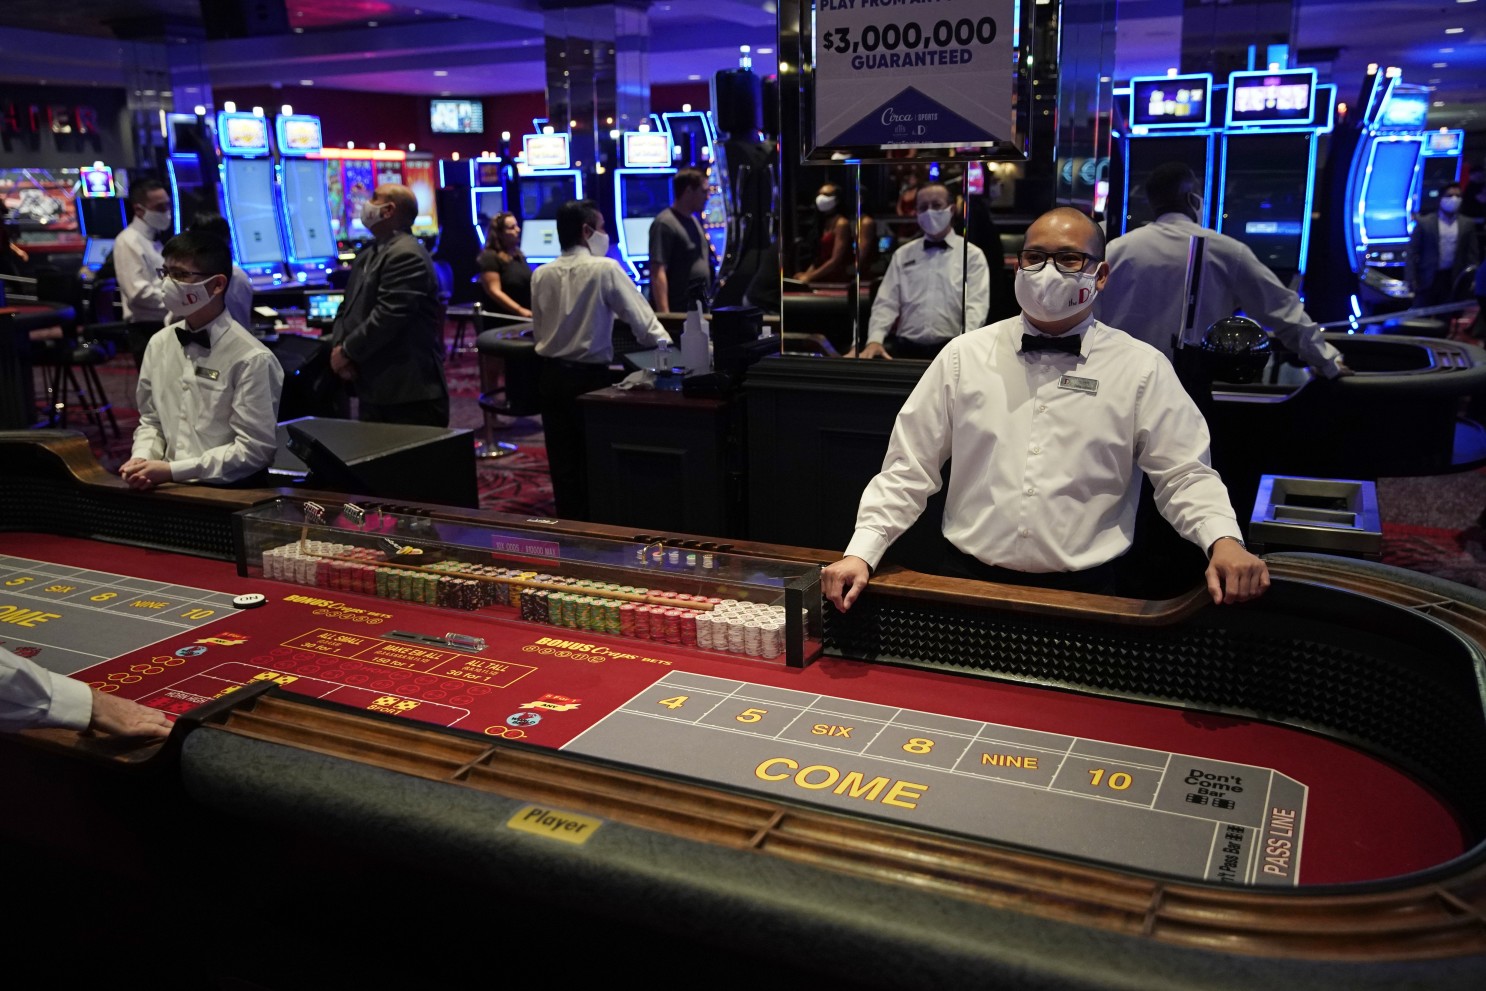 сколько можно выиграть в казино лас вегаса